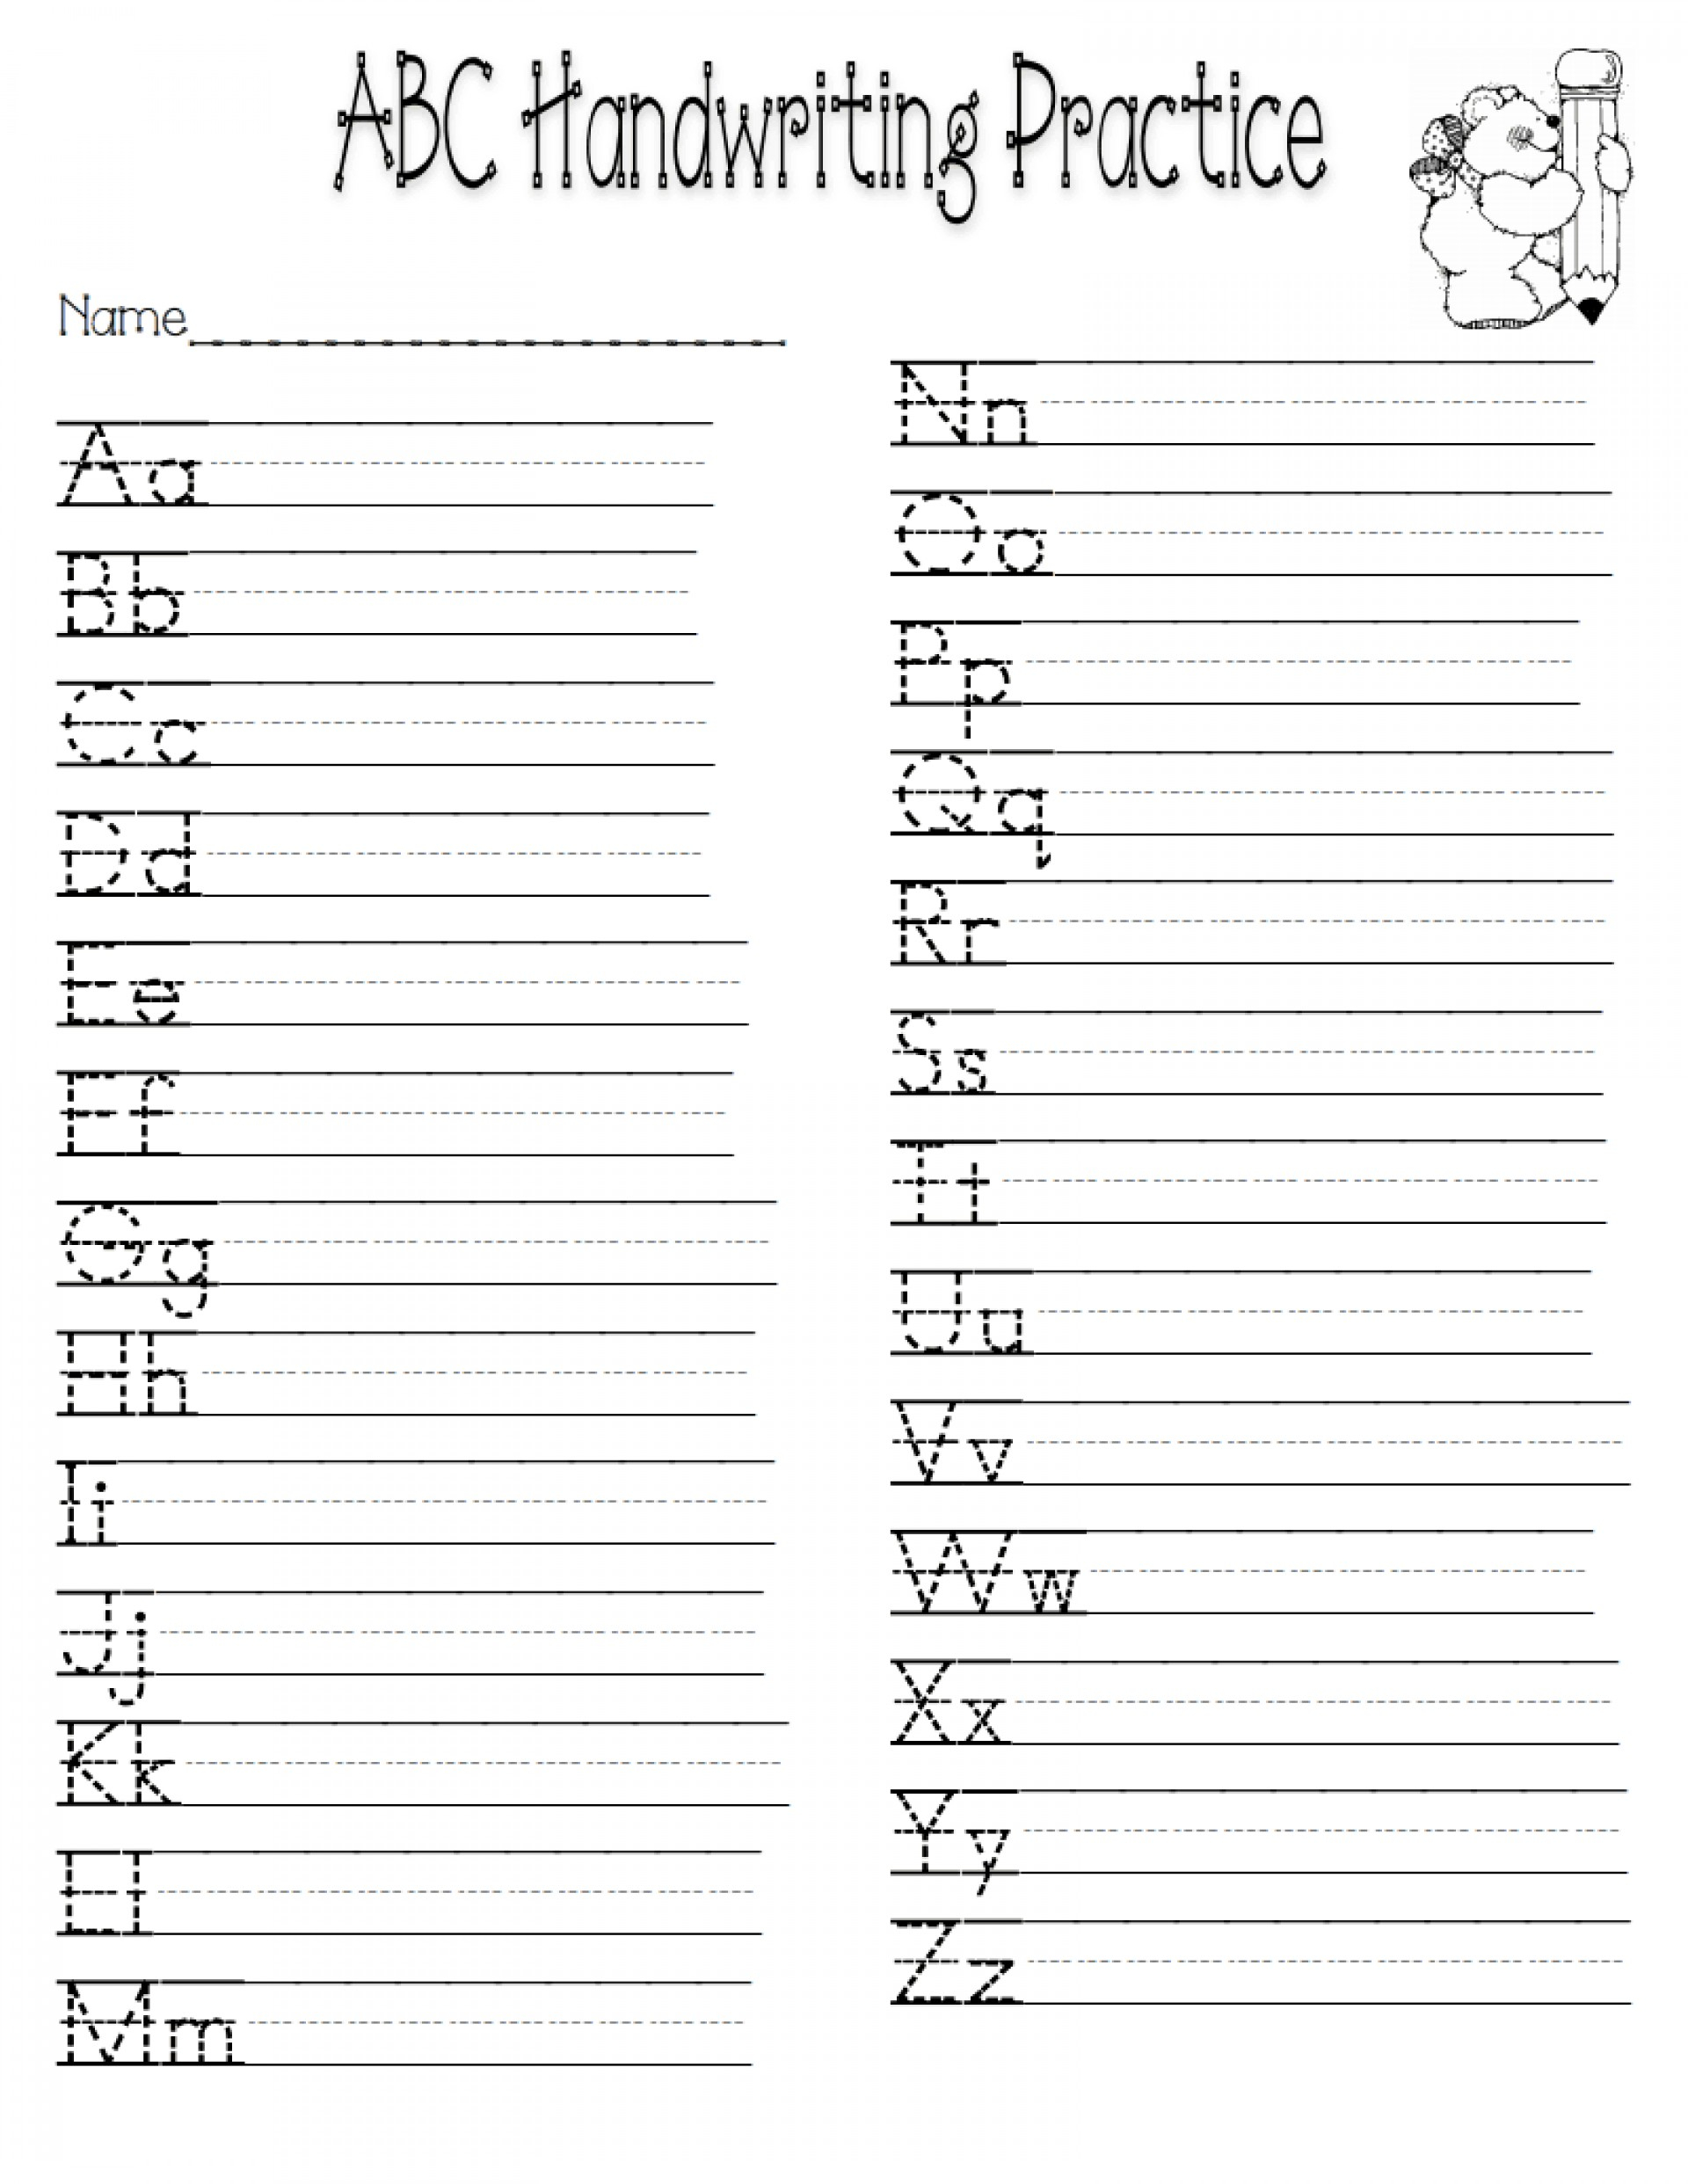 Left Handed Letter Formation Pdf Format Free Printable Cursive - Free Printable Left Handed Worksheets